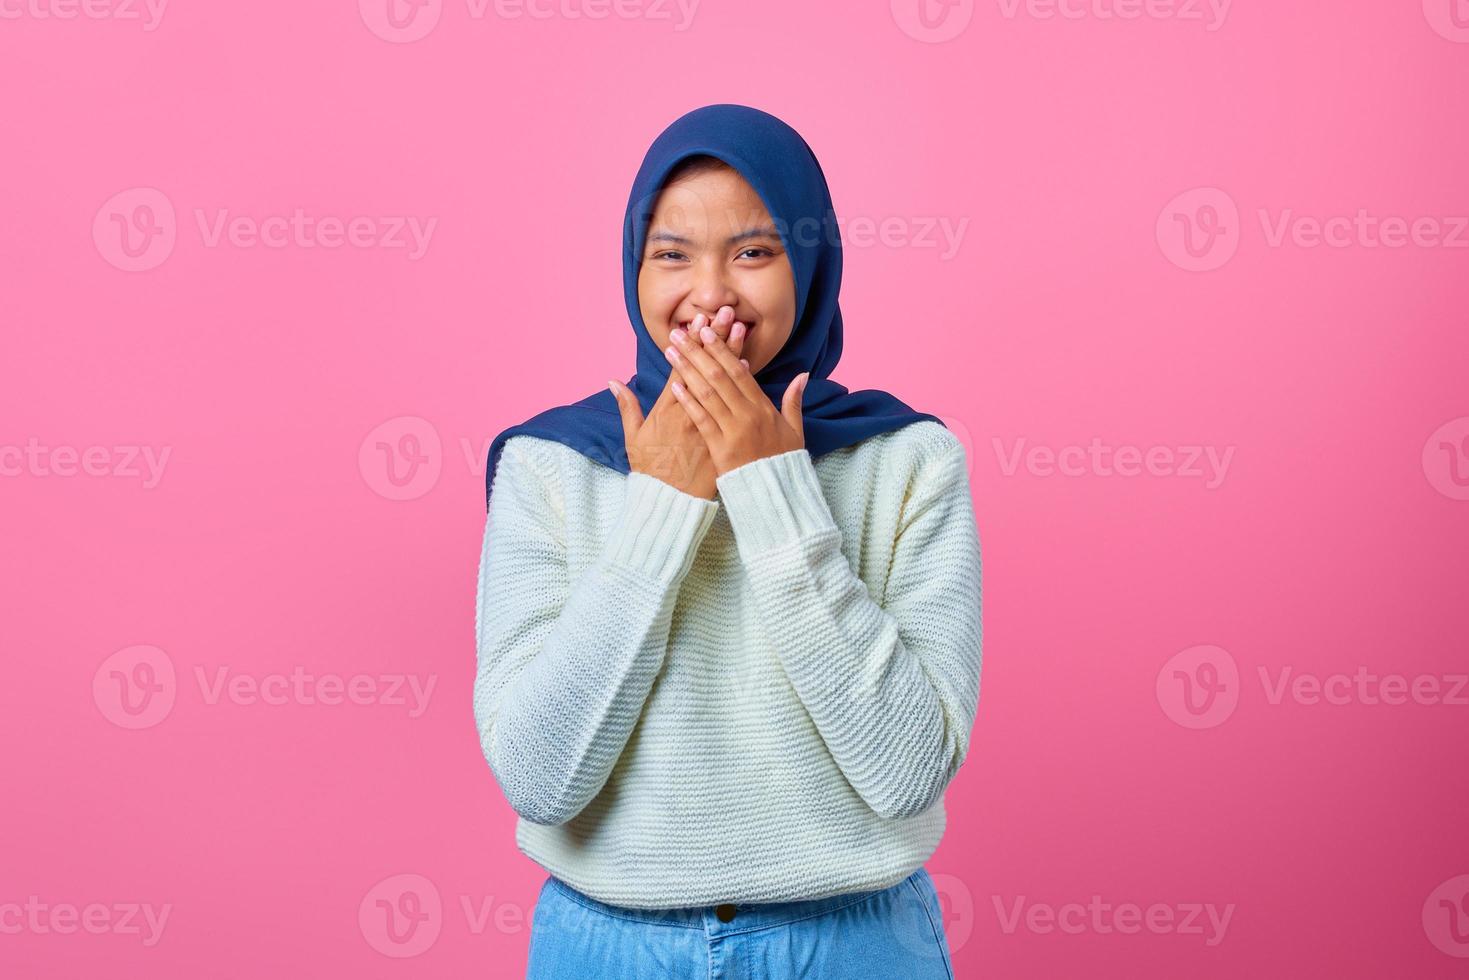 ritratto di giovane donna asiatica sorridente che copre la bocca con la mano su sfondo rosa foto